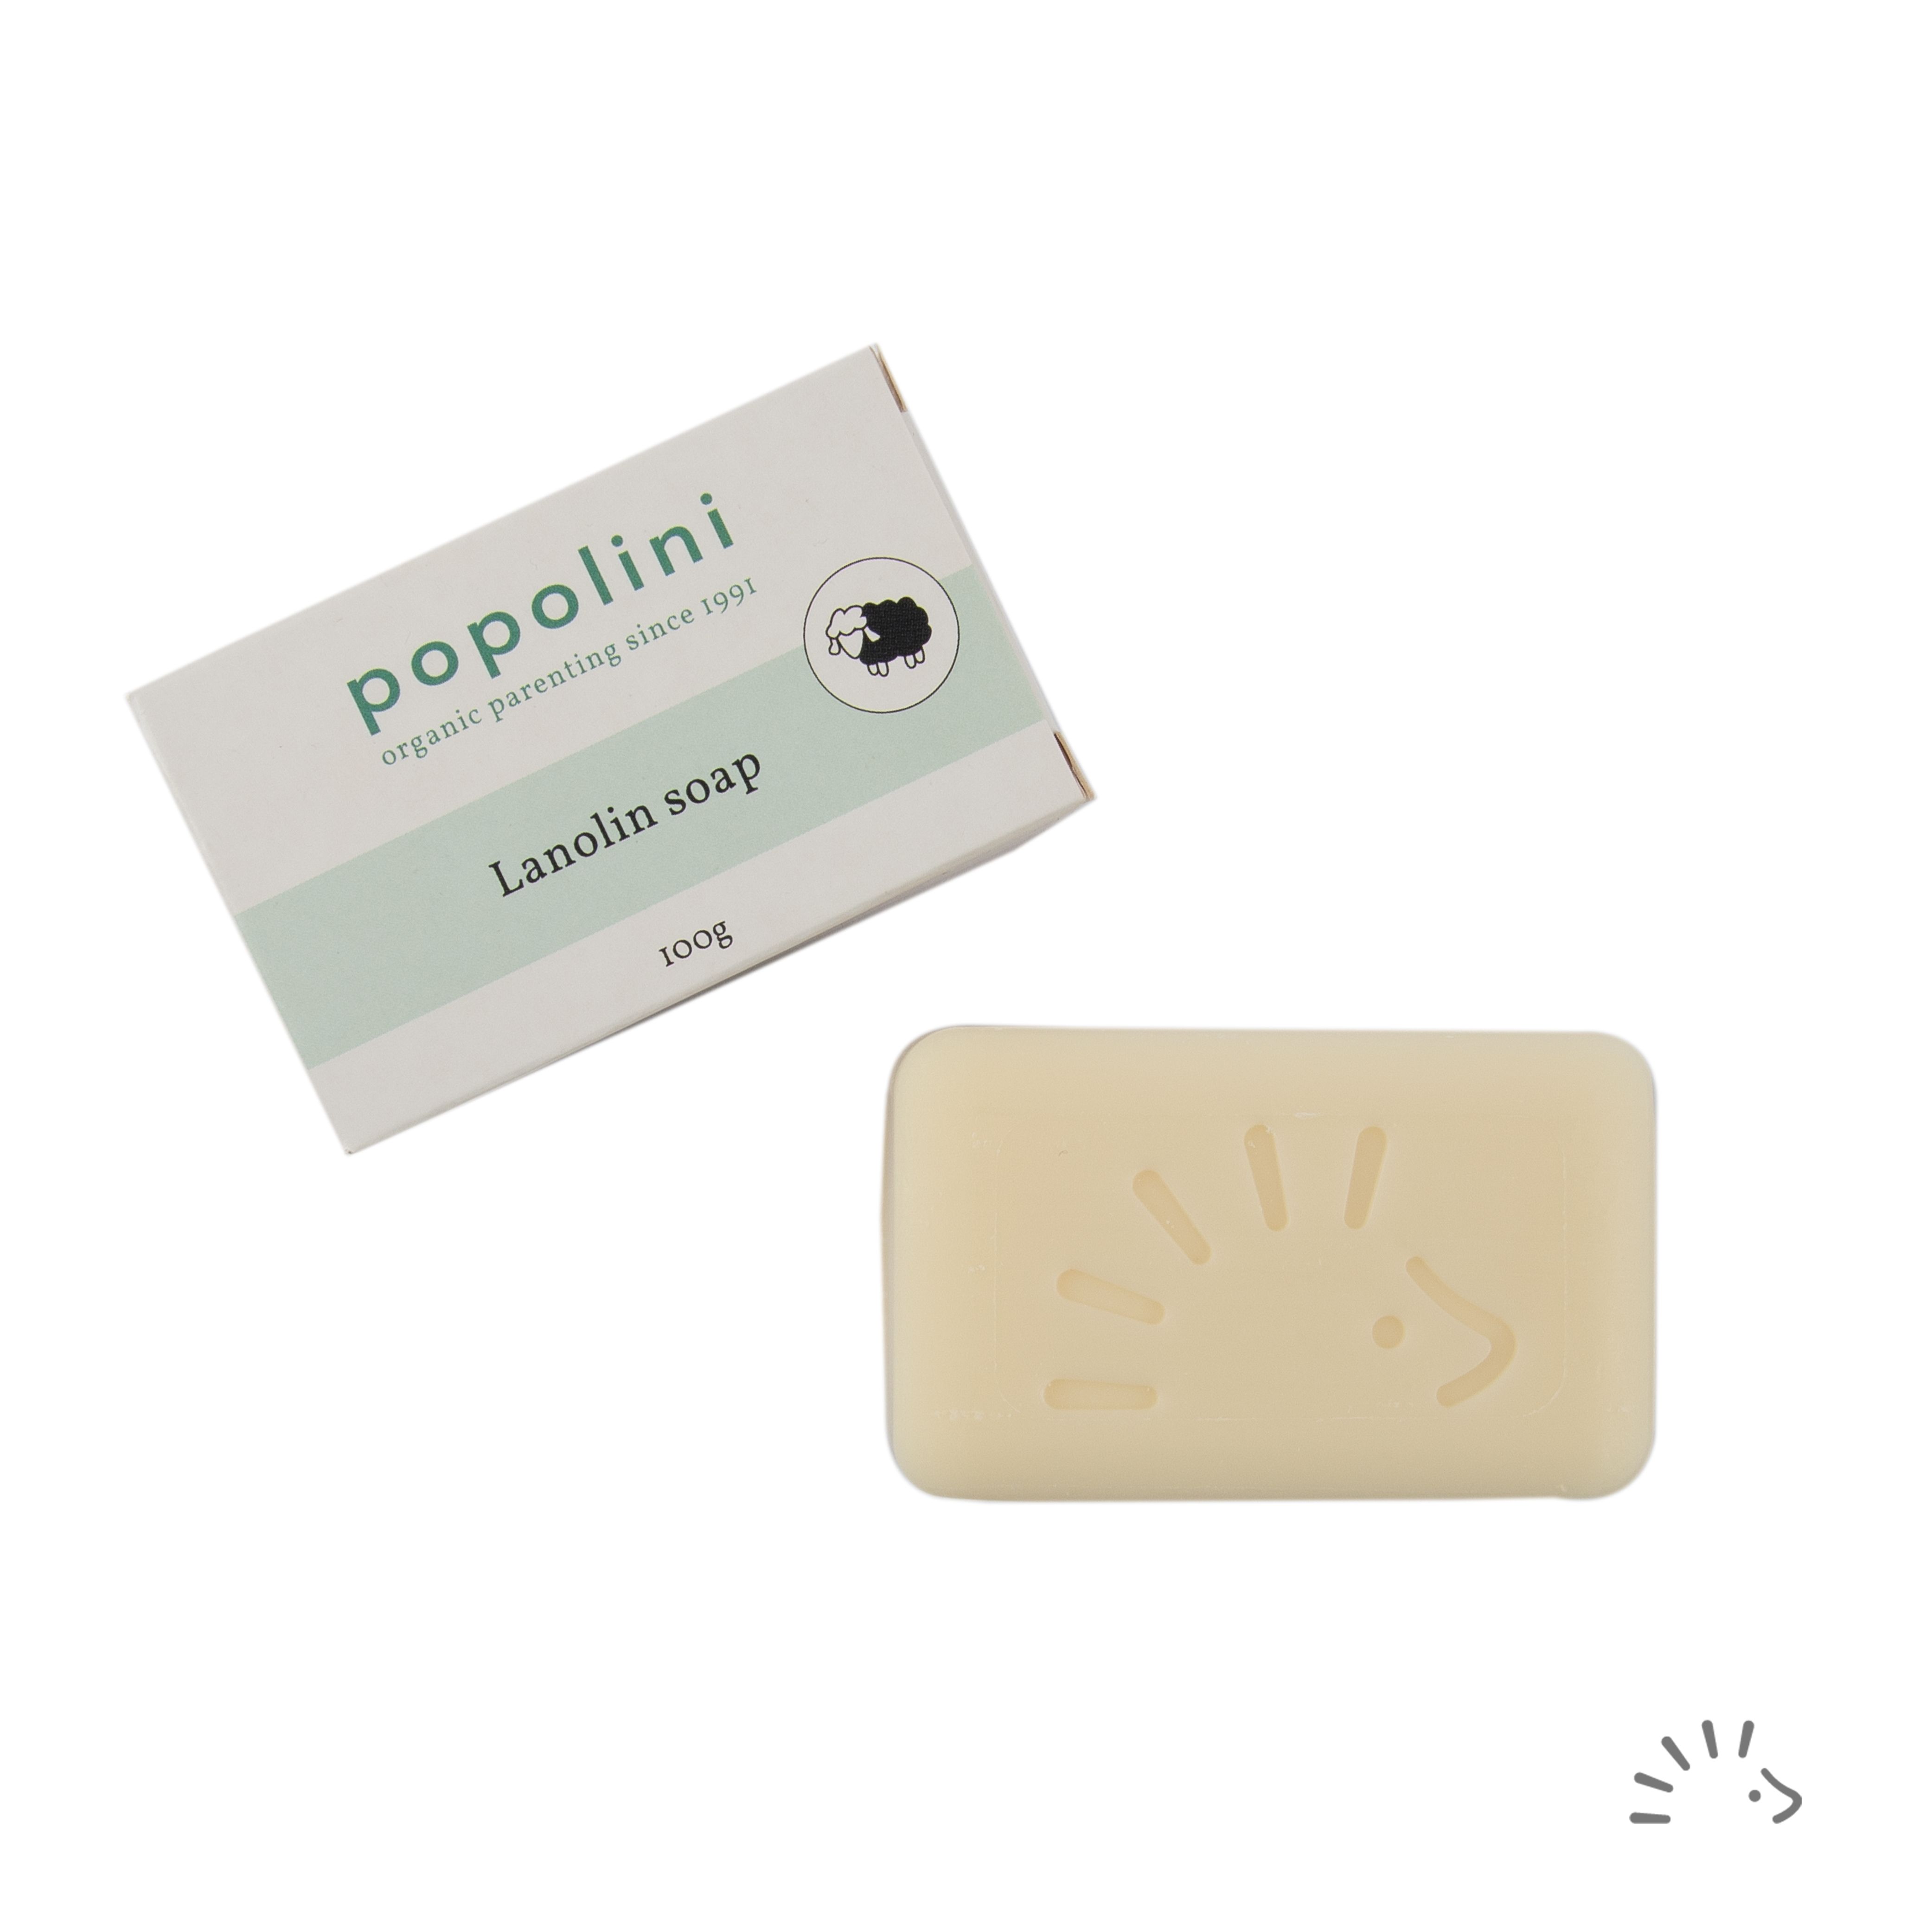 Popolini lanolinové mýdlo 100g